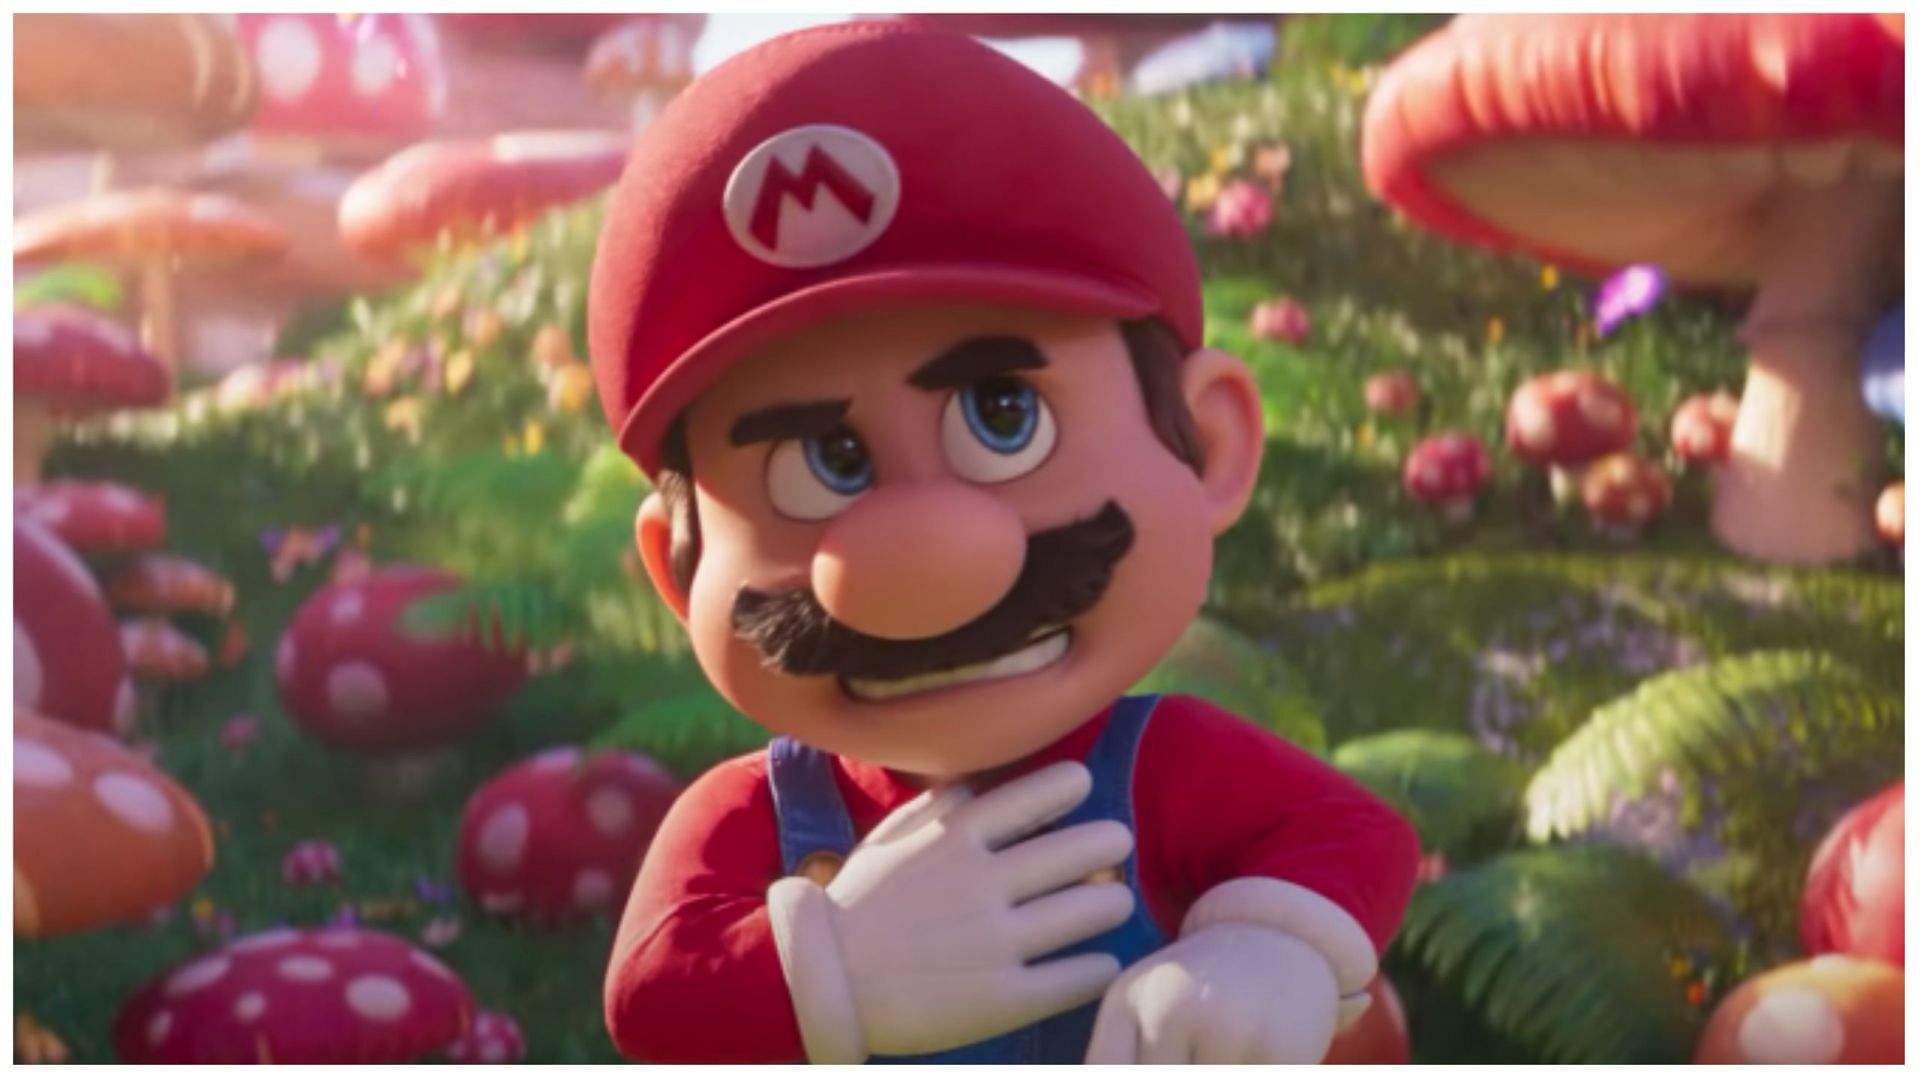 Chris Pratt receives major backlash for Mario Super Bros movie; details explored. (Image via Instagram)